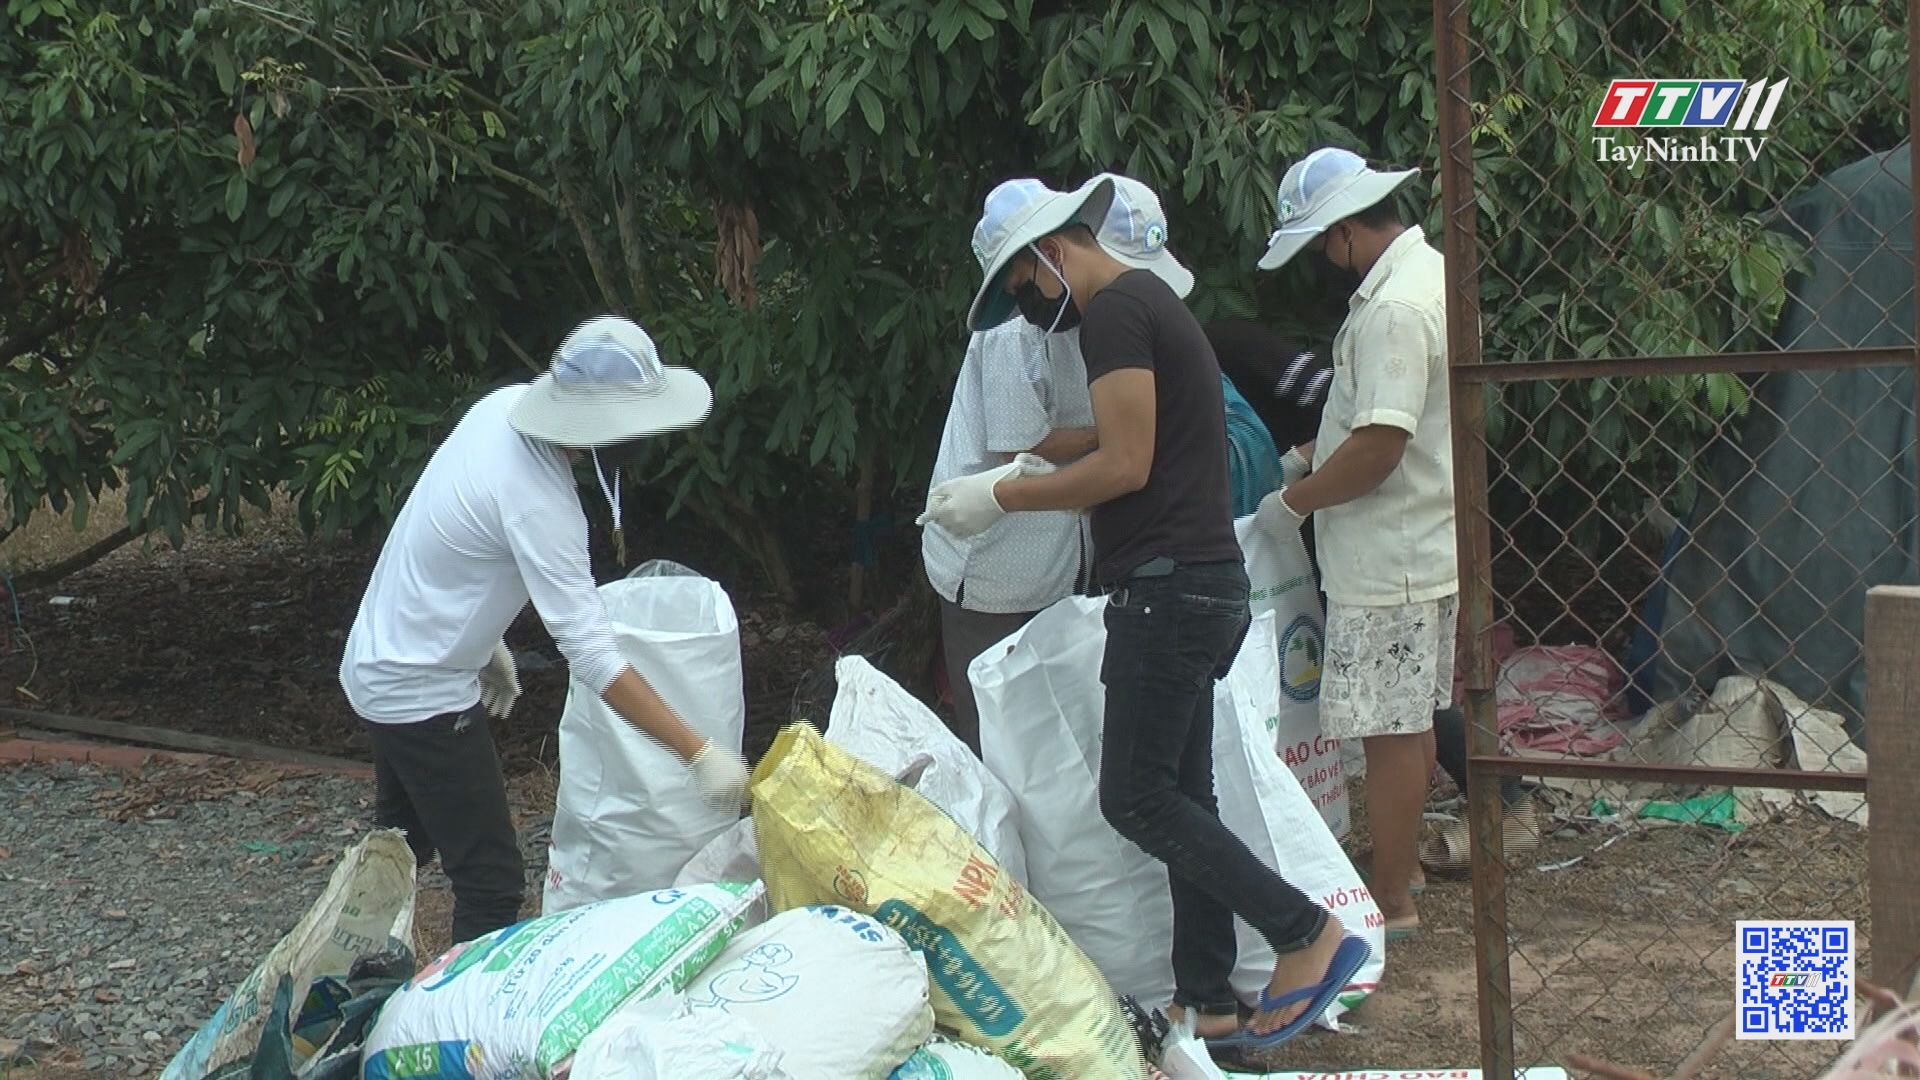 Vận động thu gom rác thải từ thuốc bảo vệ thực vật | NÔNG NGHIỆP | TayNinhTV